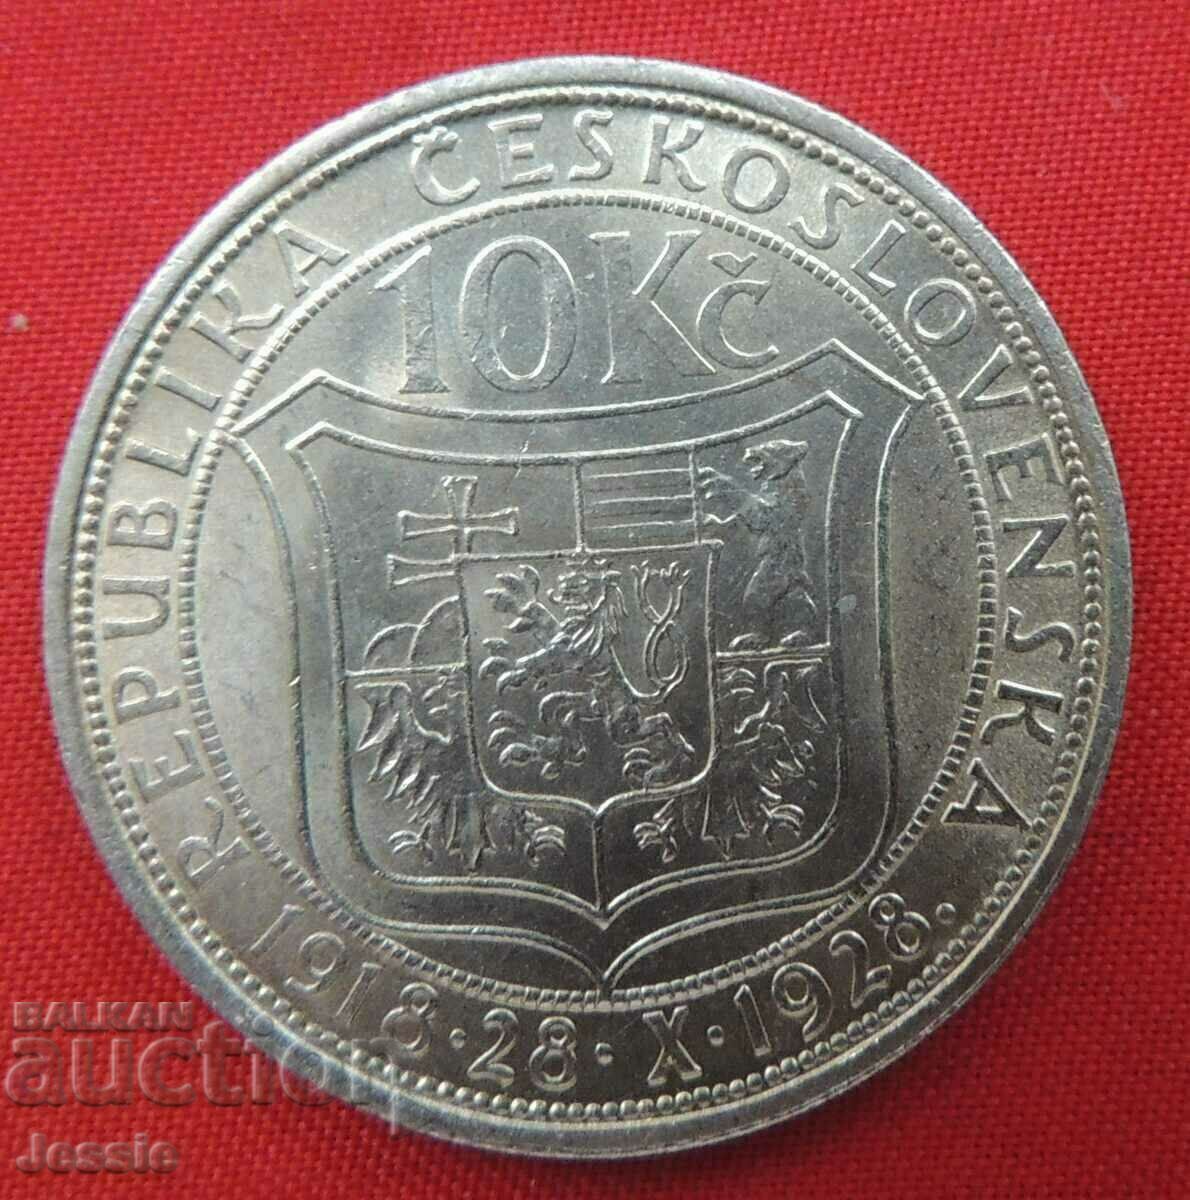 10 kroner 1928 Czechoslovakia Quality